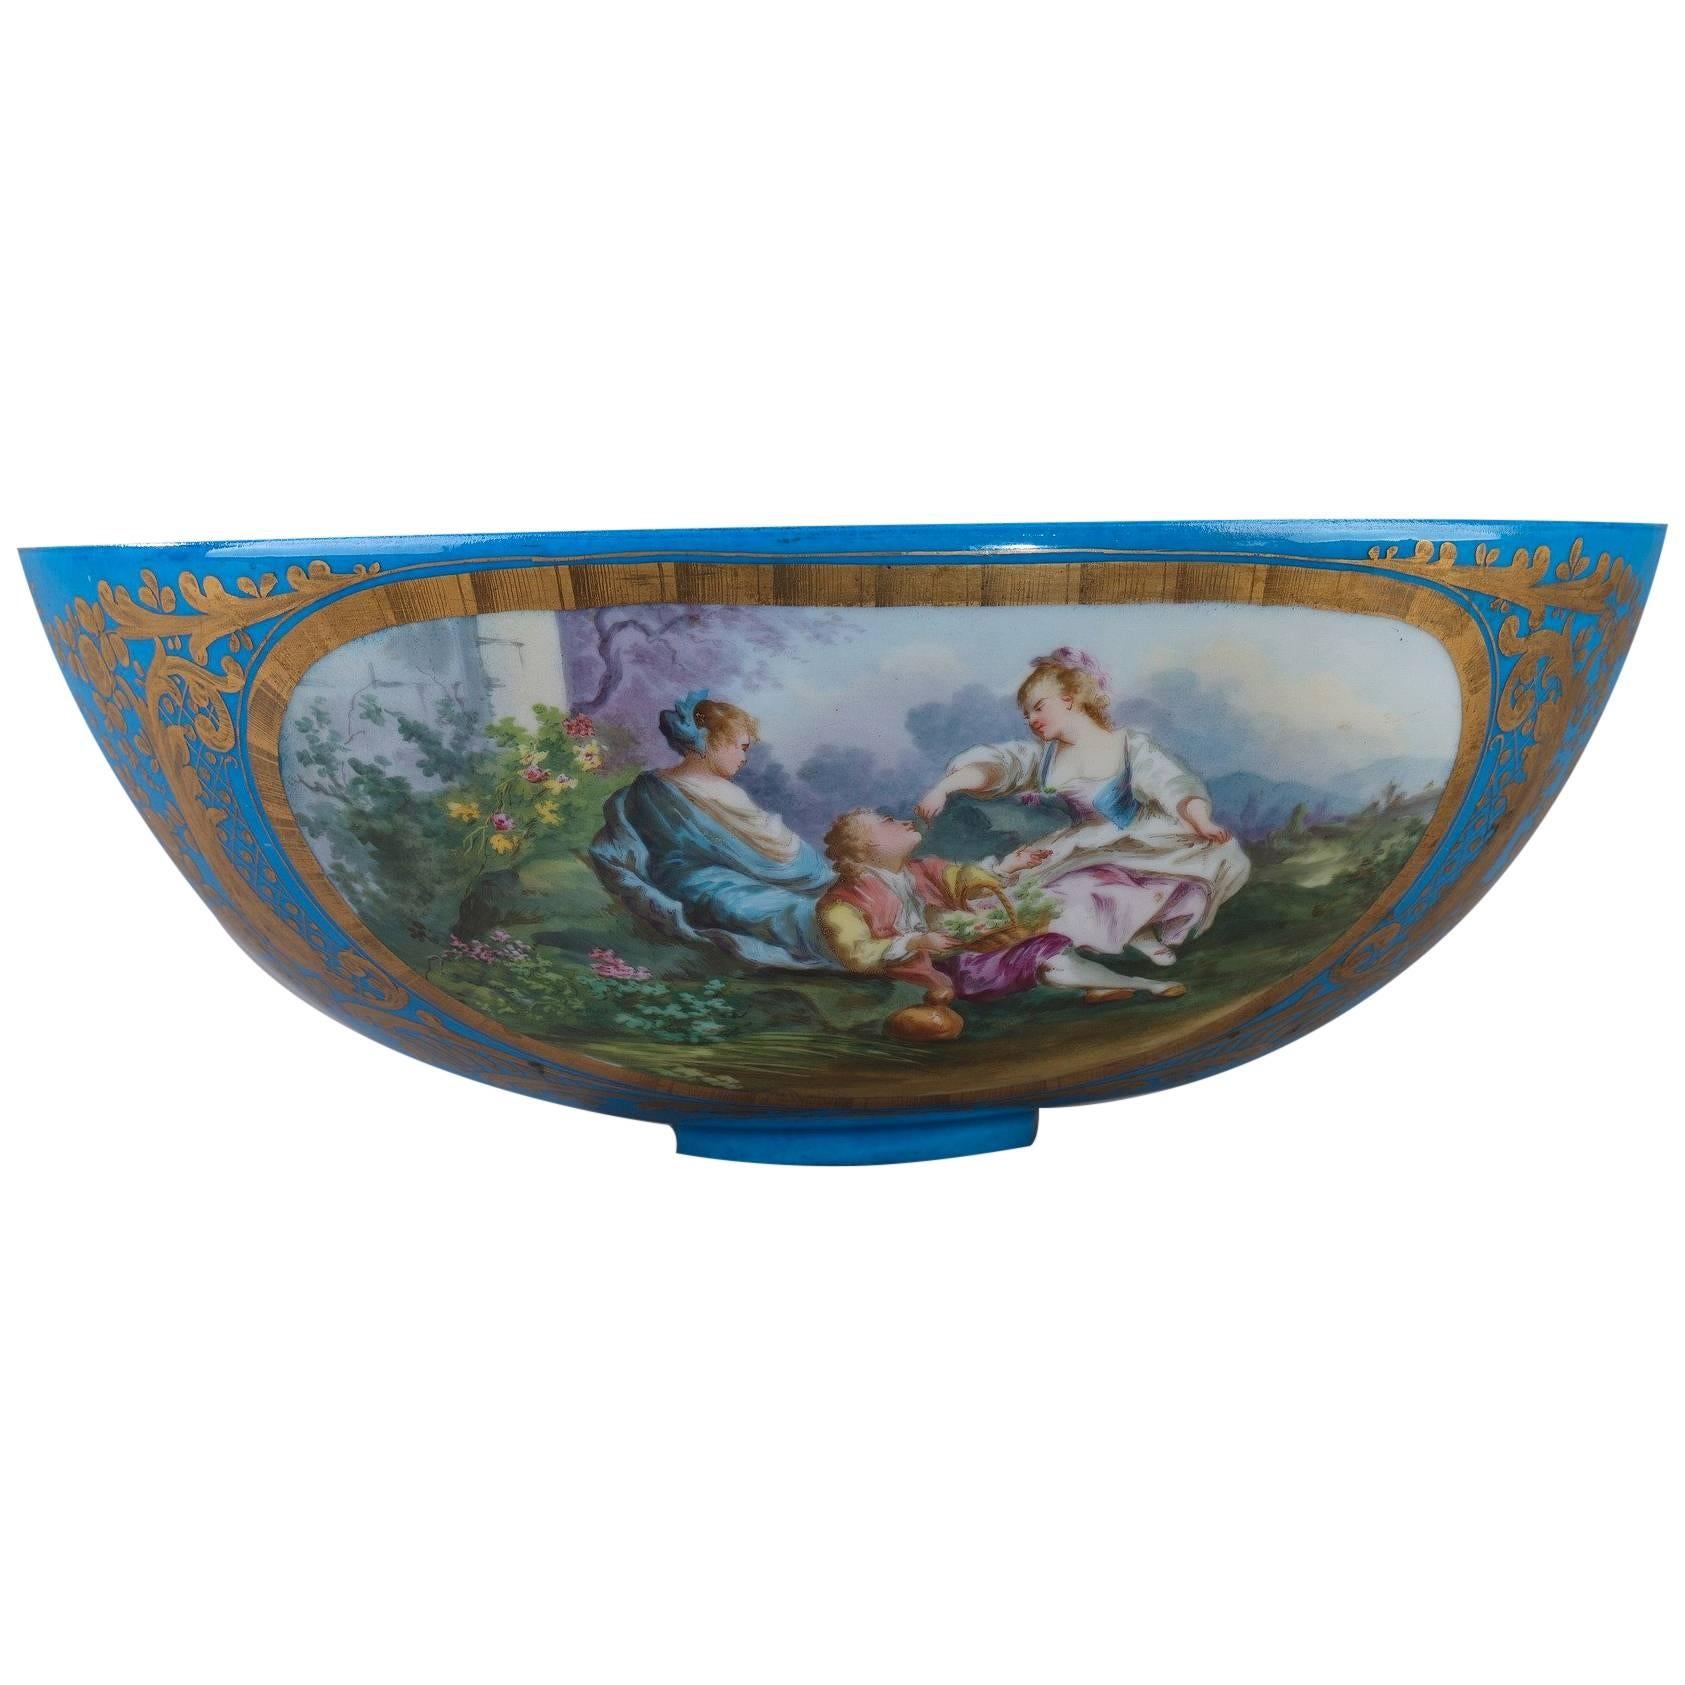 19th Century Large Porcelain Bowl in Sevres Taste